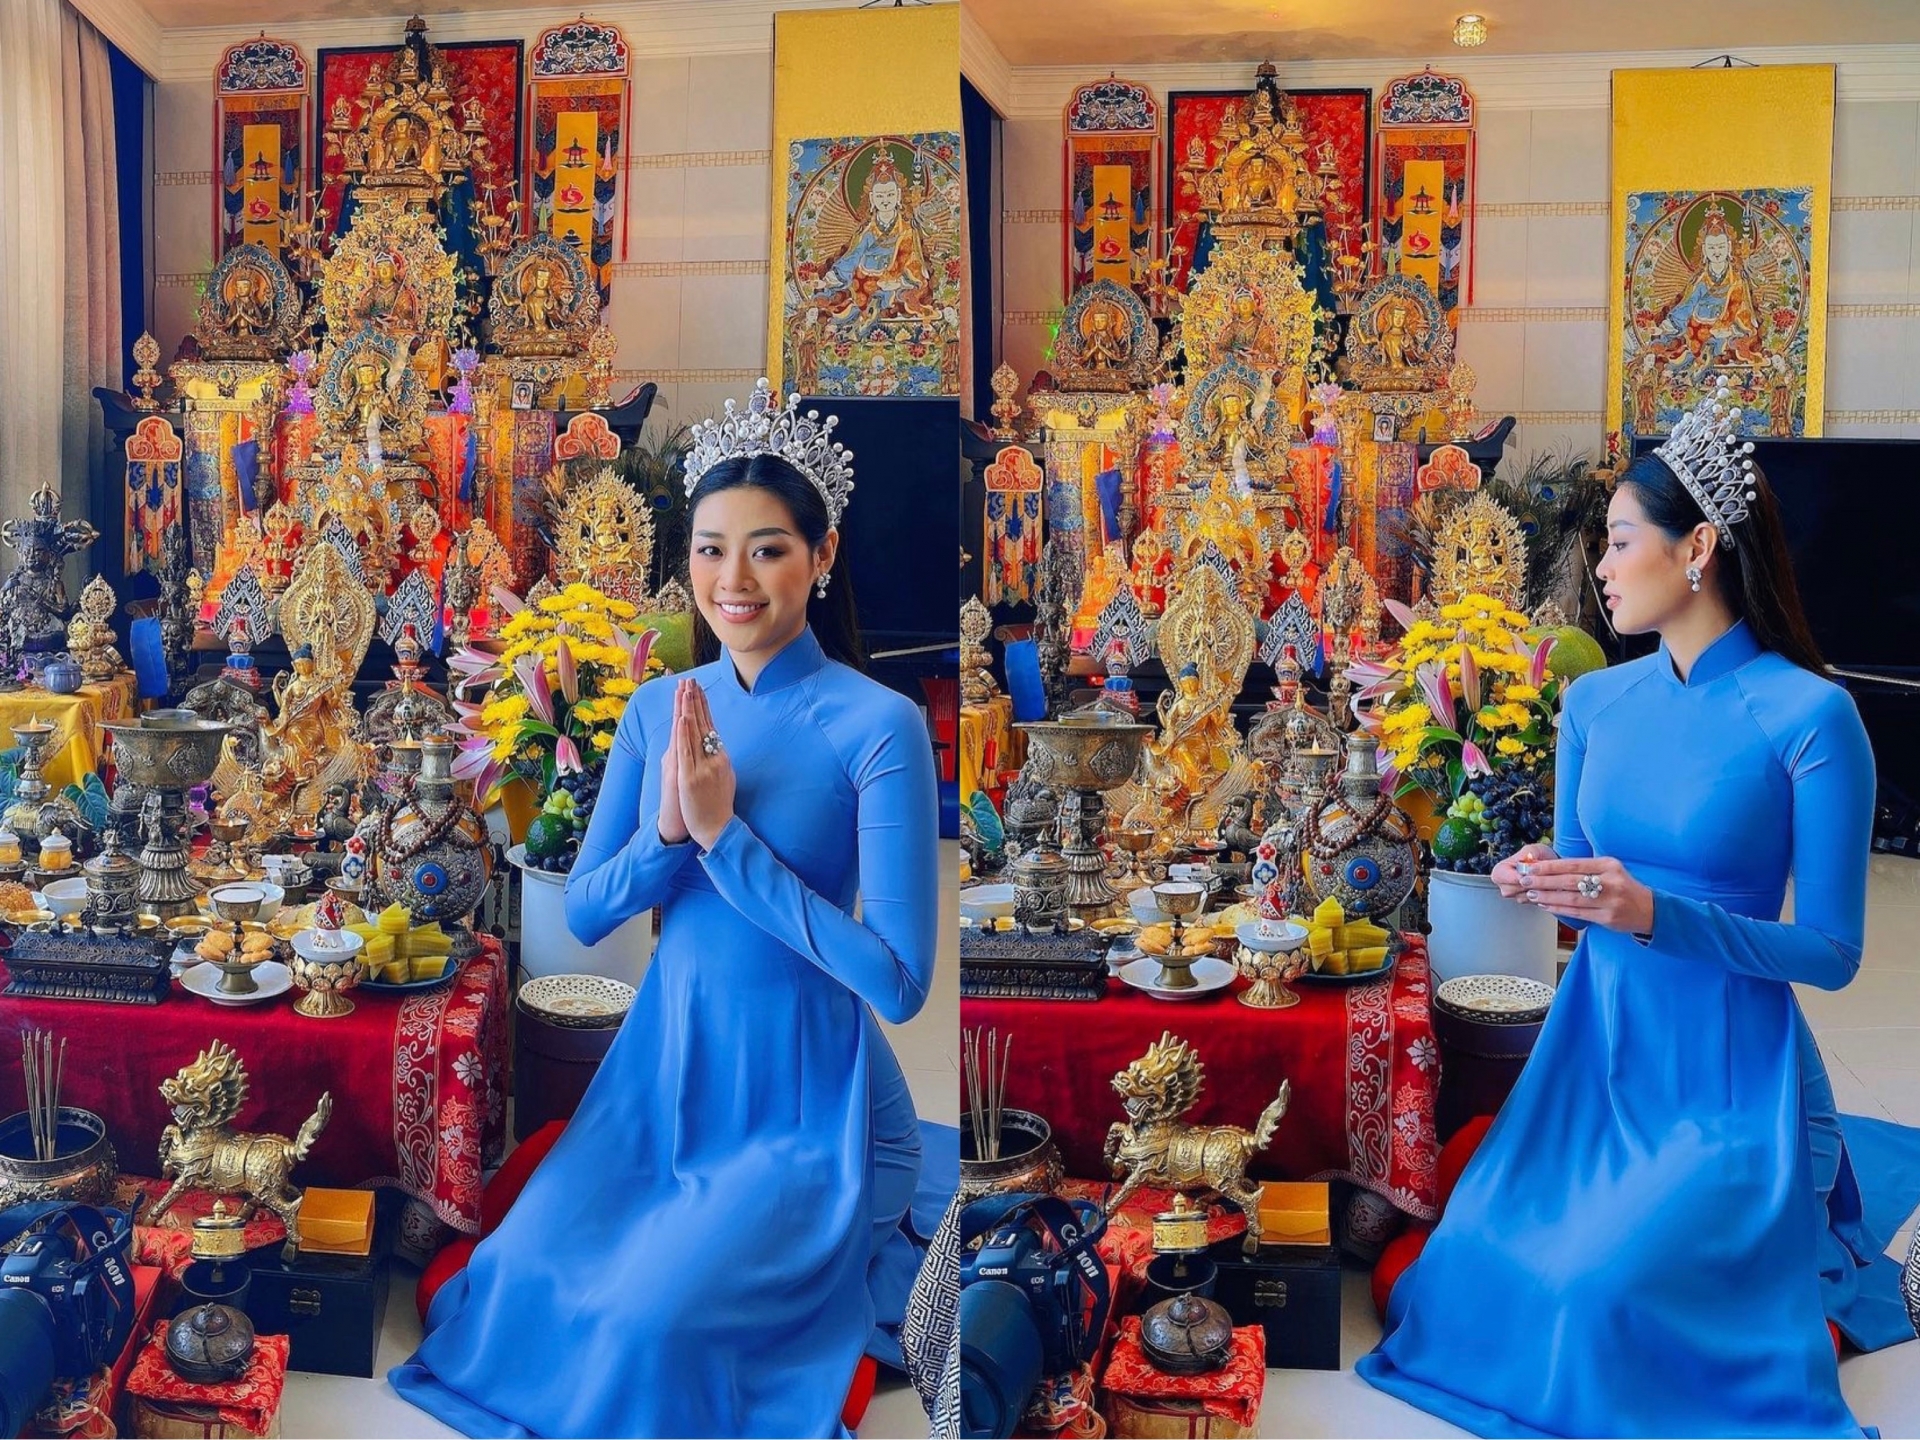 Lựa chọn diện một chiếc áo dài để bày tỏ lòng kính trọng với ông Tổ ngành sân khấu, Hoa hậu Khánh Vân nhận được 'cơn mưa lời khen' từ cộng đồng mạng. Người đẹp cũng không quên đội chiếc vương miện lộng lẫy để thêm phần ấn tượng.